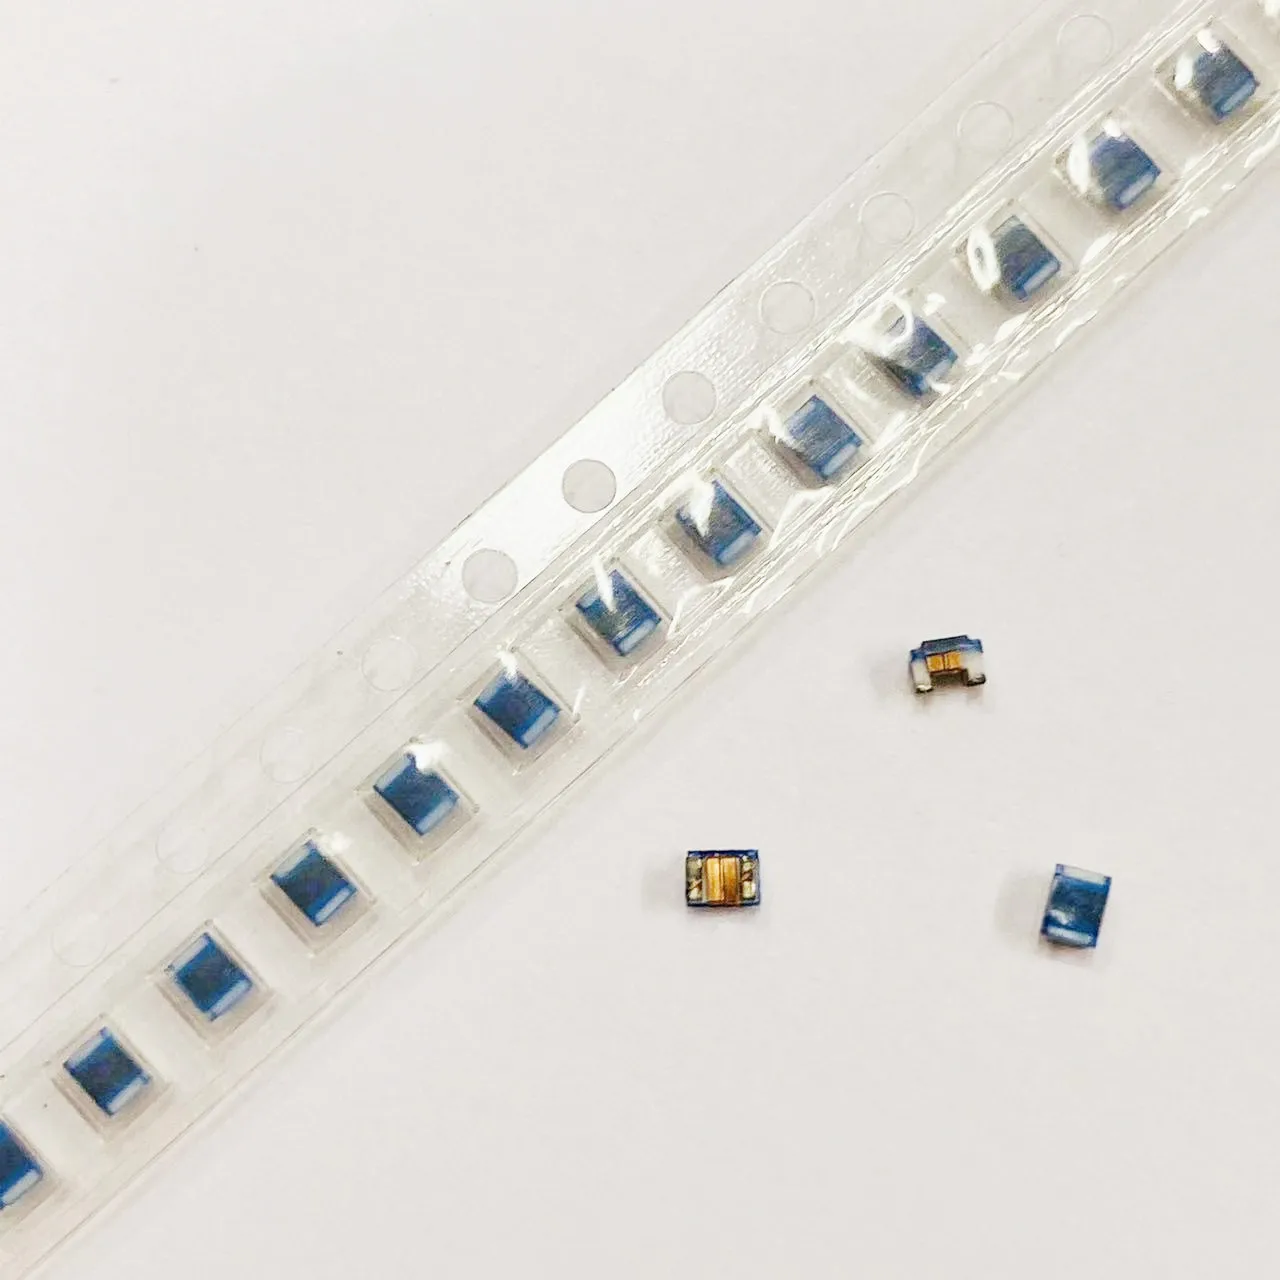 

Новые оригинальные проволочные чиповые индукторы 100 0805 мкГн 0805 2012 нГн мкГн 0805CS-222XJEC, шт.